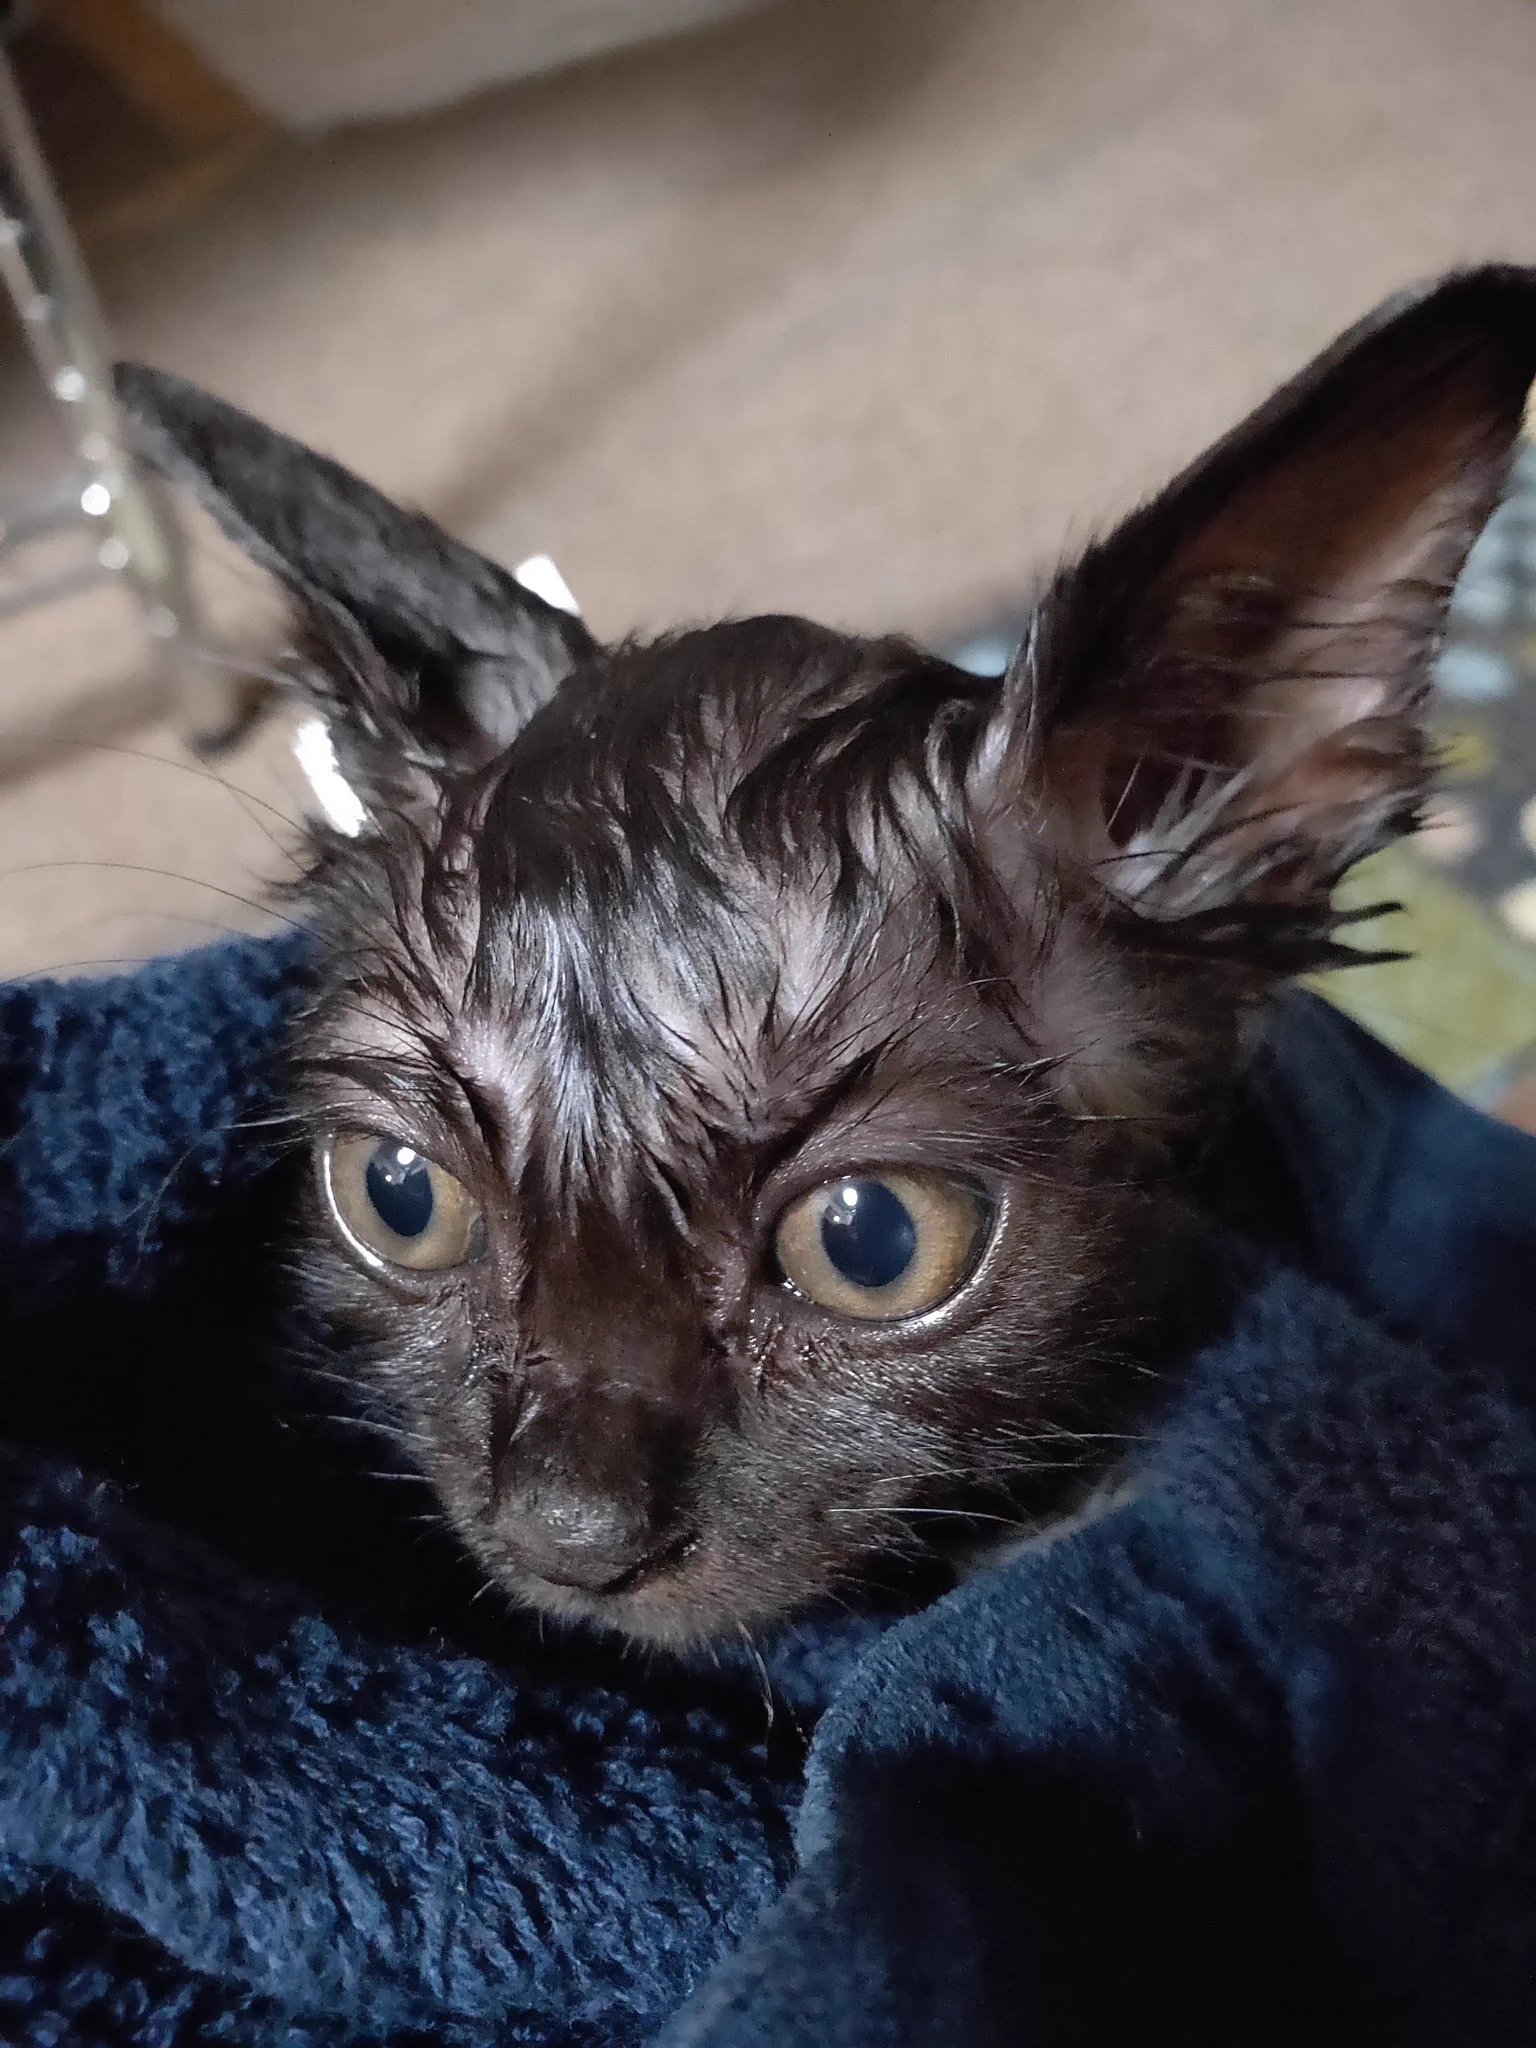 @comori_uta うちの猫も丸洗いされたあとは「ニンゲン シンジナイ」みたいな顔します 